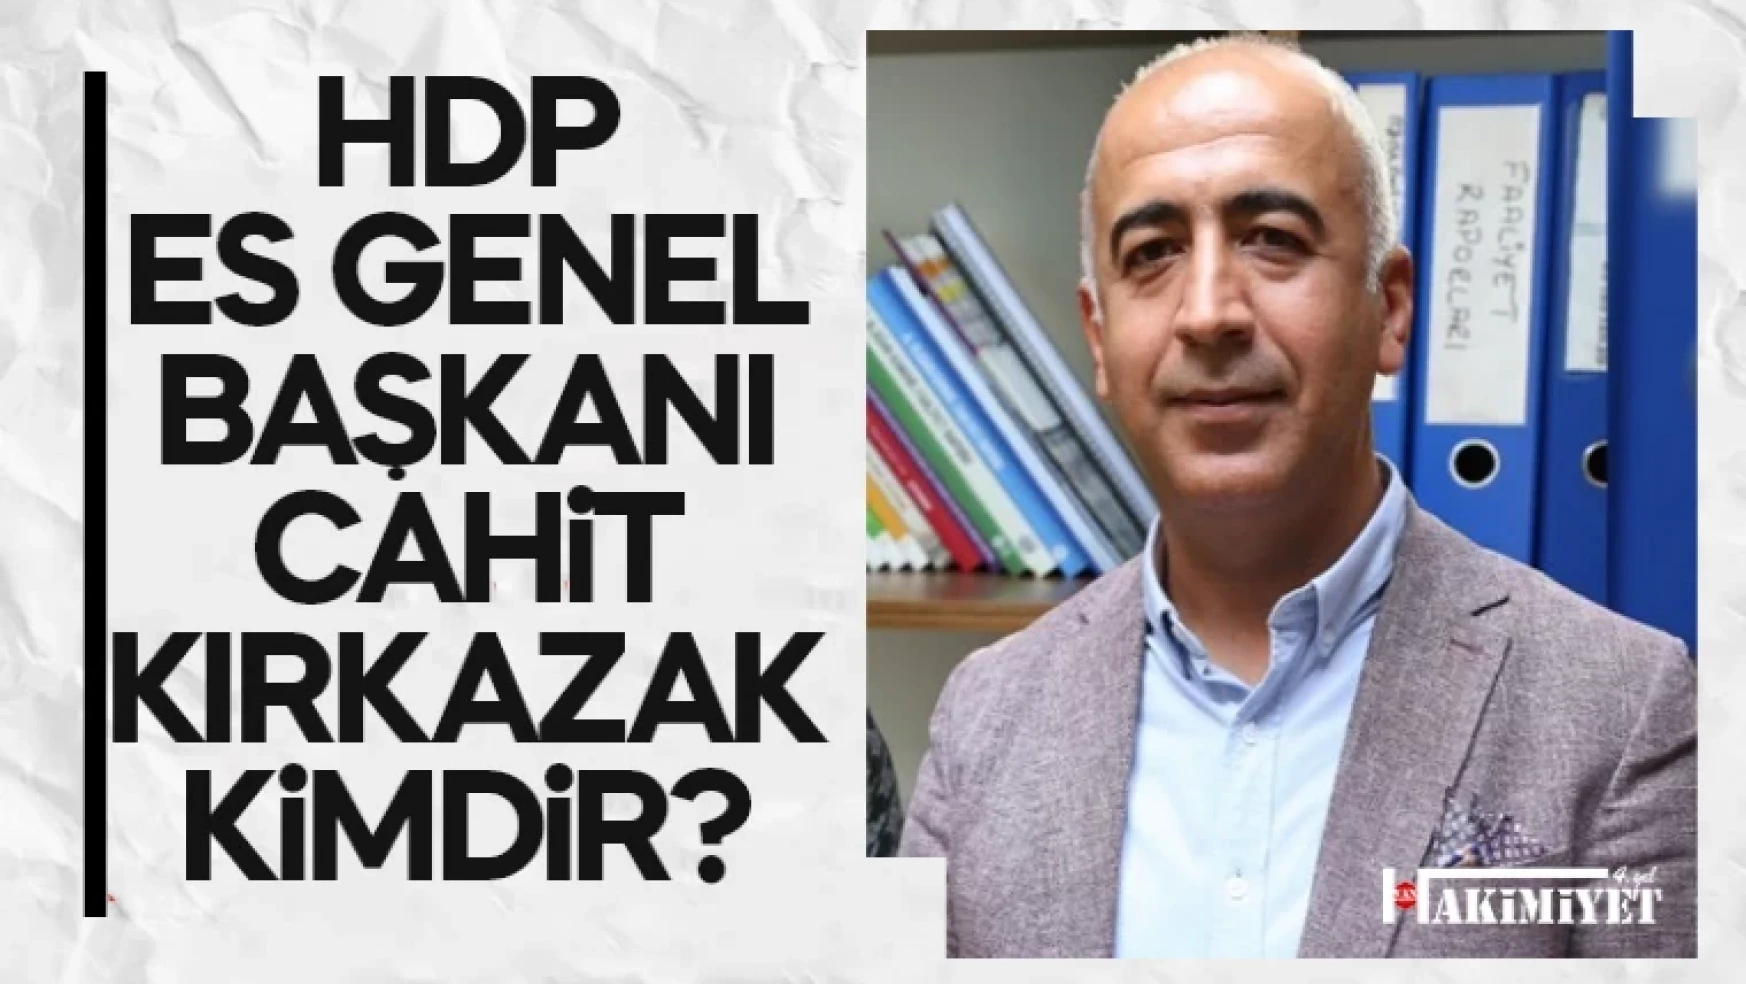 HDP Eş Genel Başkanı Cahit Kırkazak kimdir?